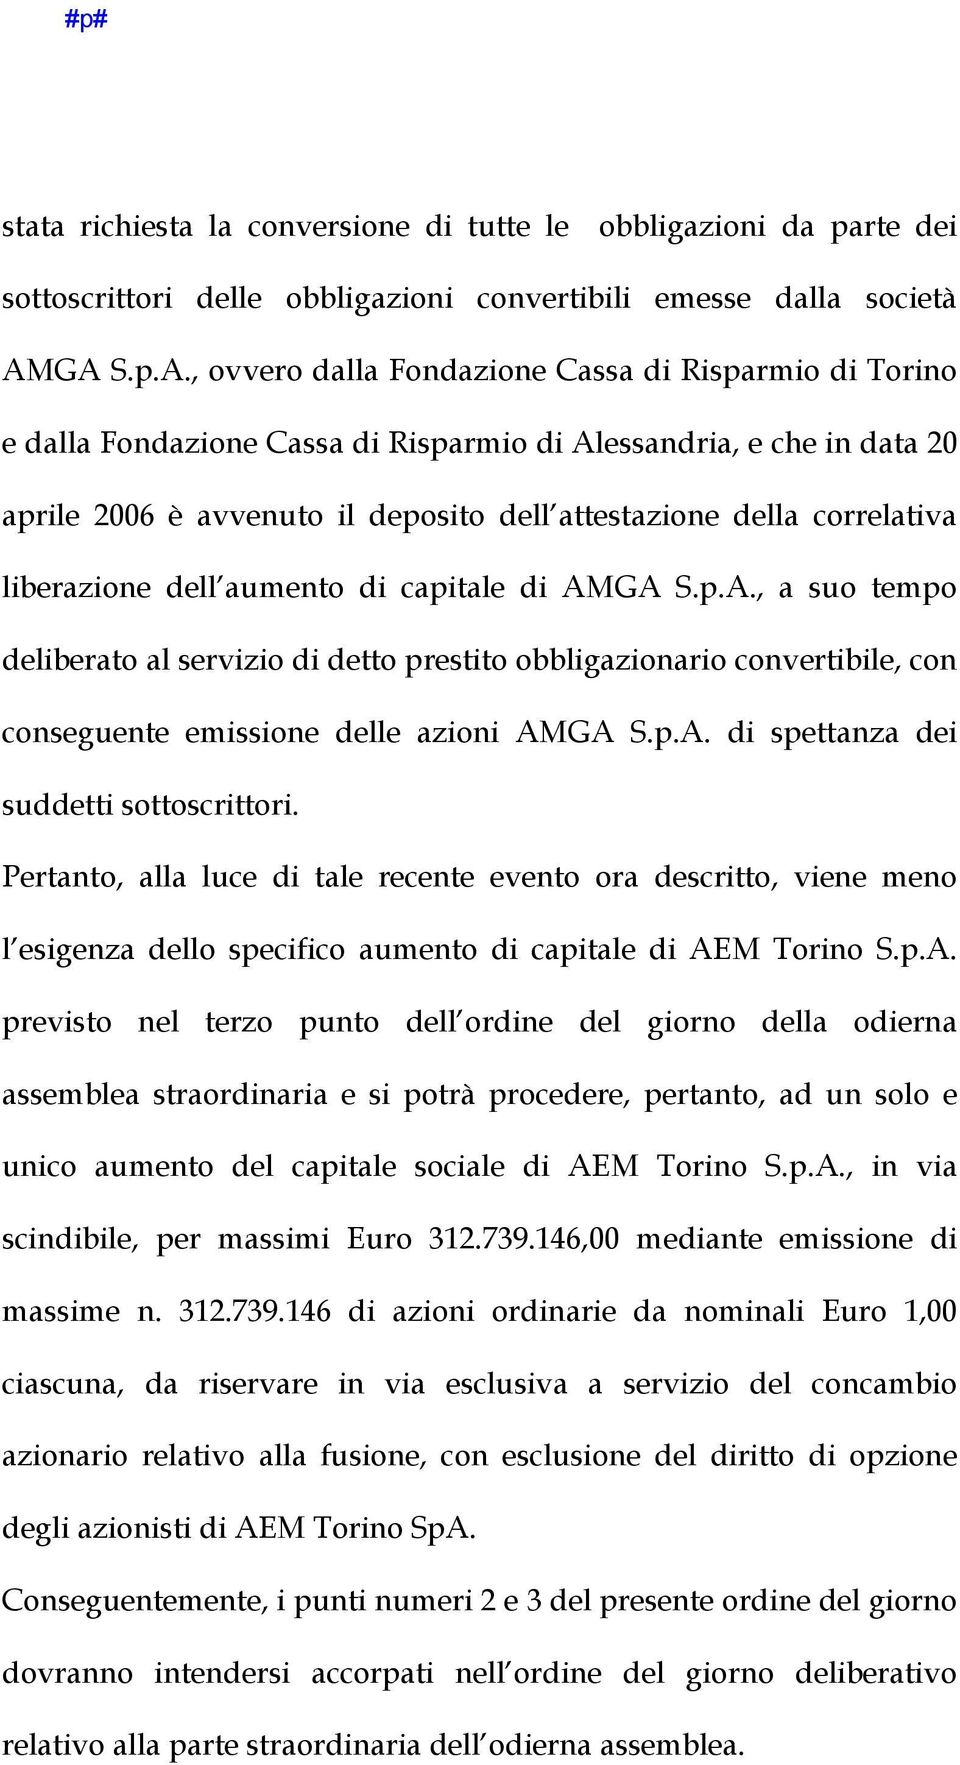 correlativa liberazione dell aumento di capitale di AMGA S.p.A., a suo tempo deliberato al servizio di detto prestito obbligazionario convertibile, con conseguente emissione delle azioni AMGA S.p.A. di spettanza dei suddetti sottoscrittori.